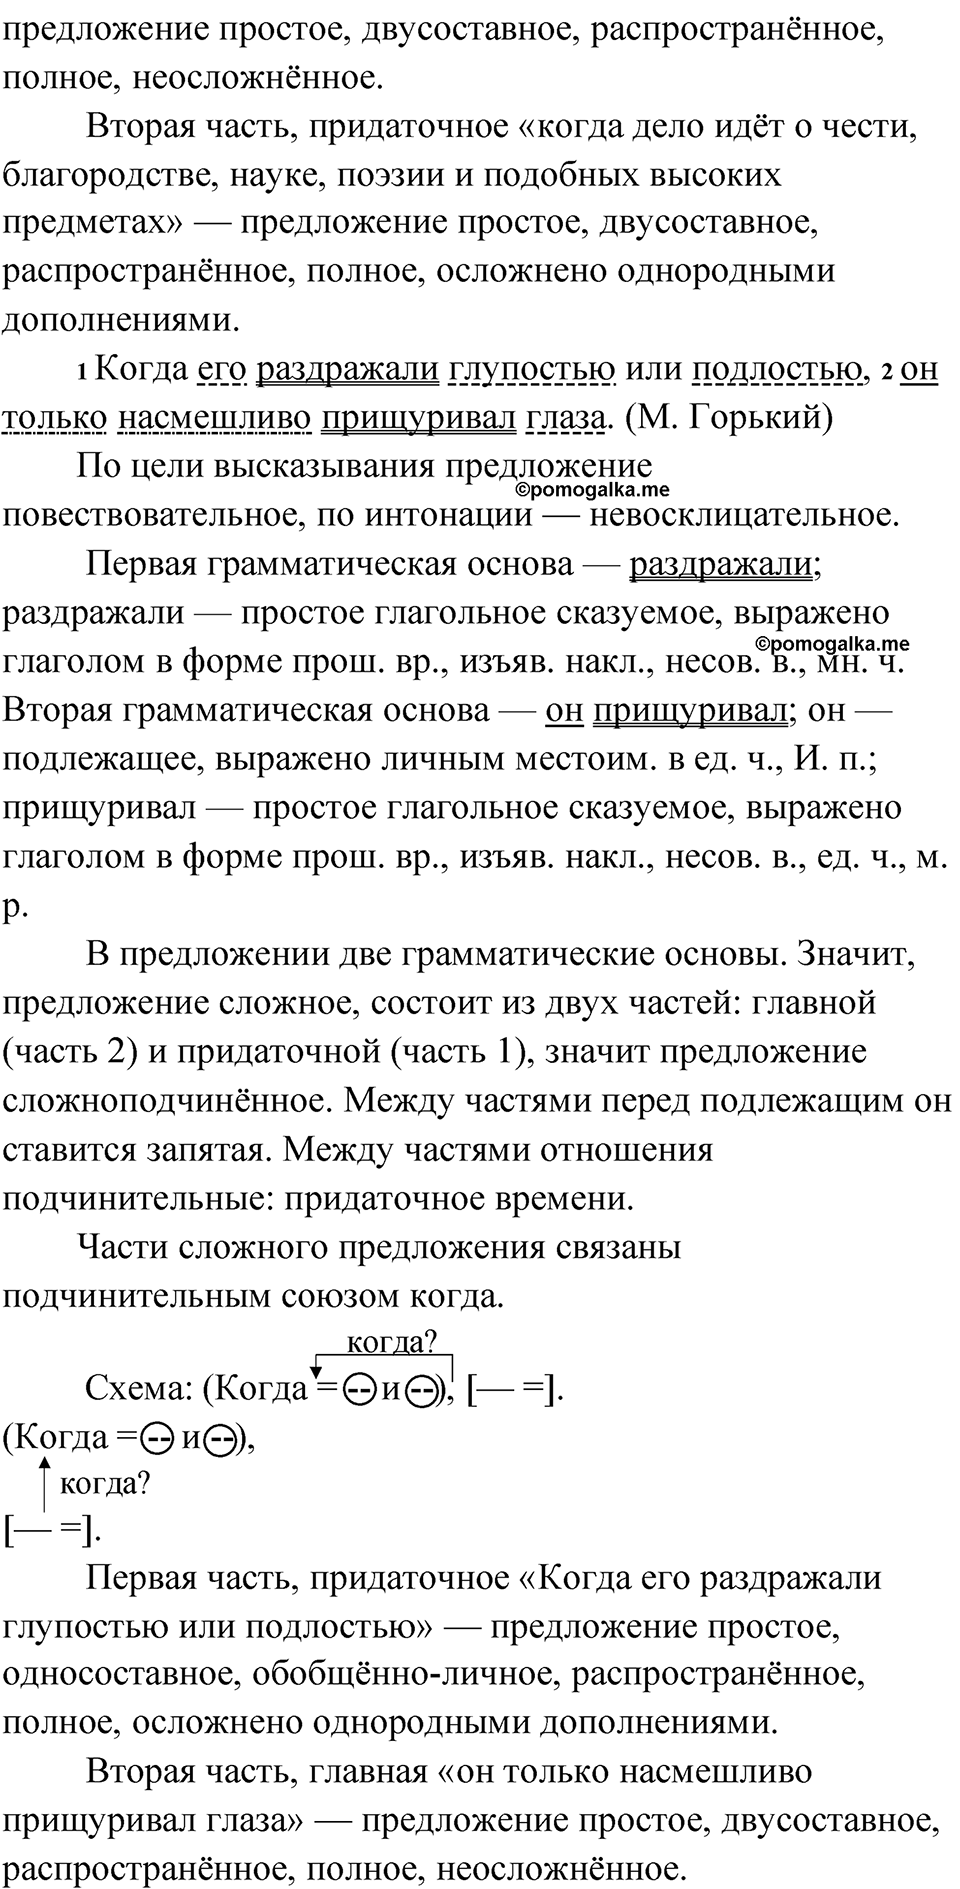 страница 224 упражнение 188 русский язык 9 класс Быстрова 1 часть 2022 год